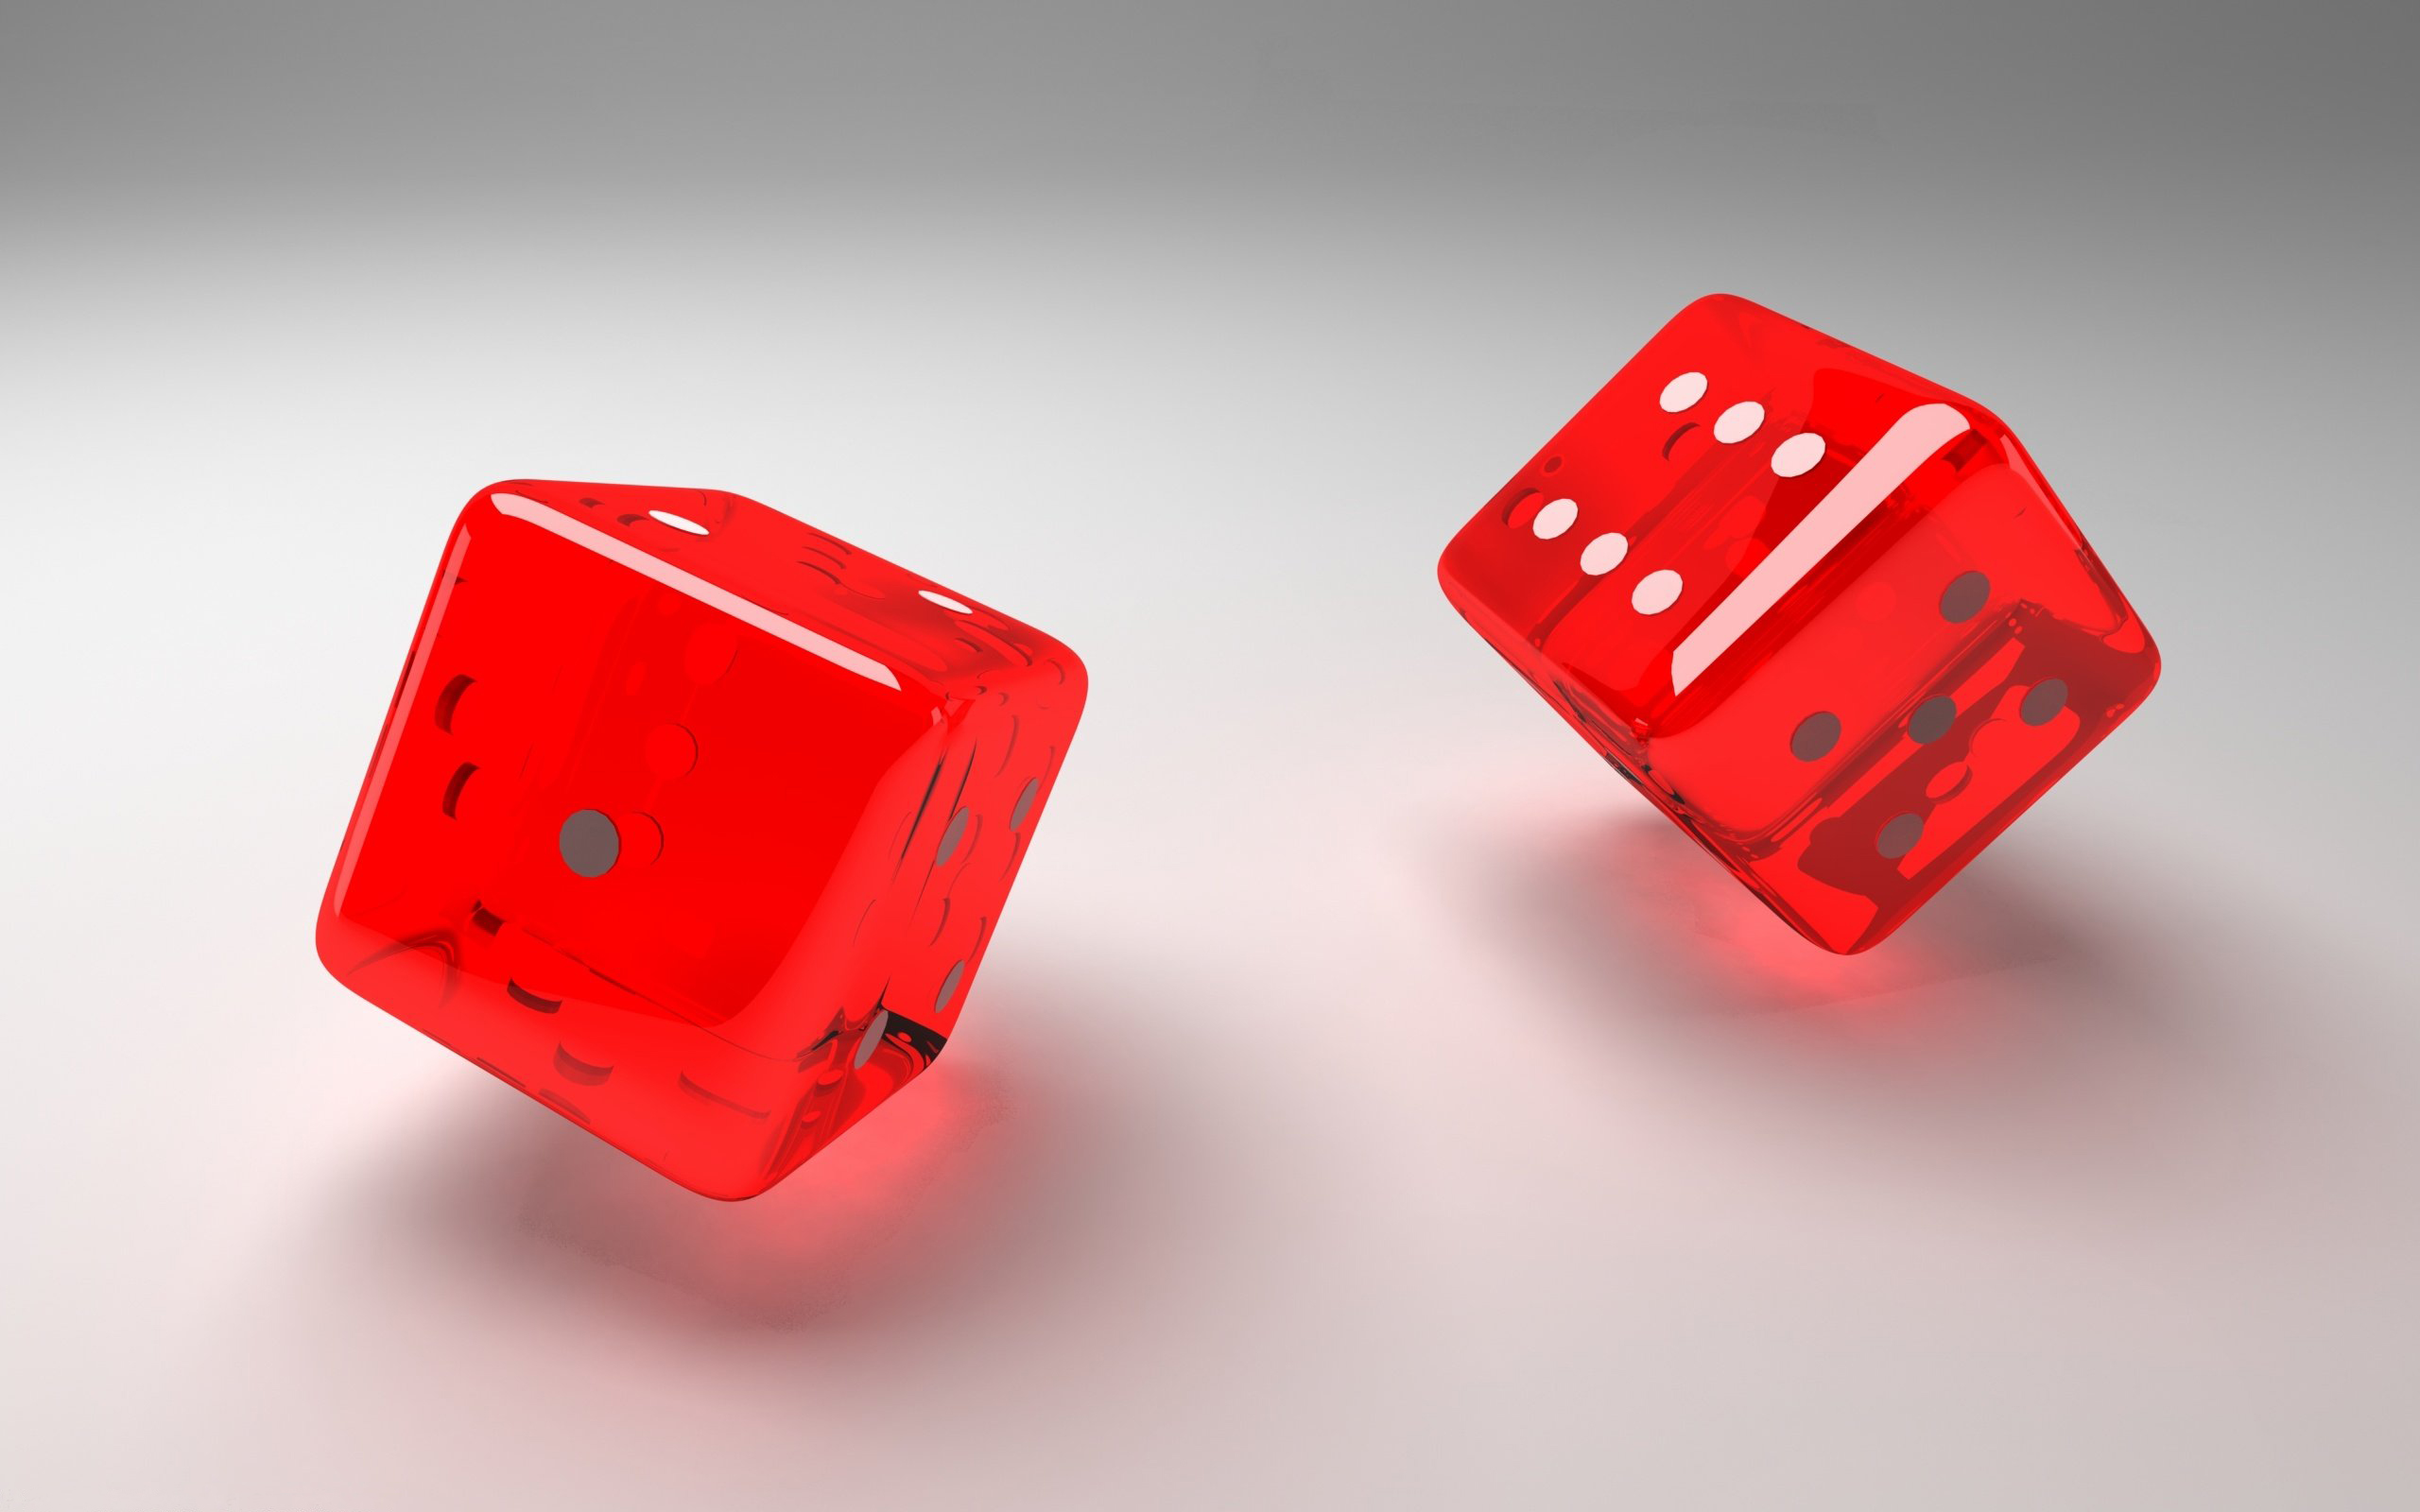 Https cub red download. D3 кубик dice. Красный кубик. Игральная кость. Красный игральный кубик.